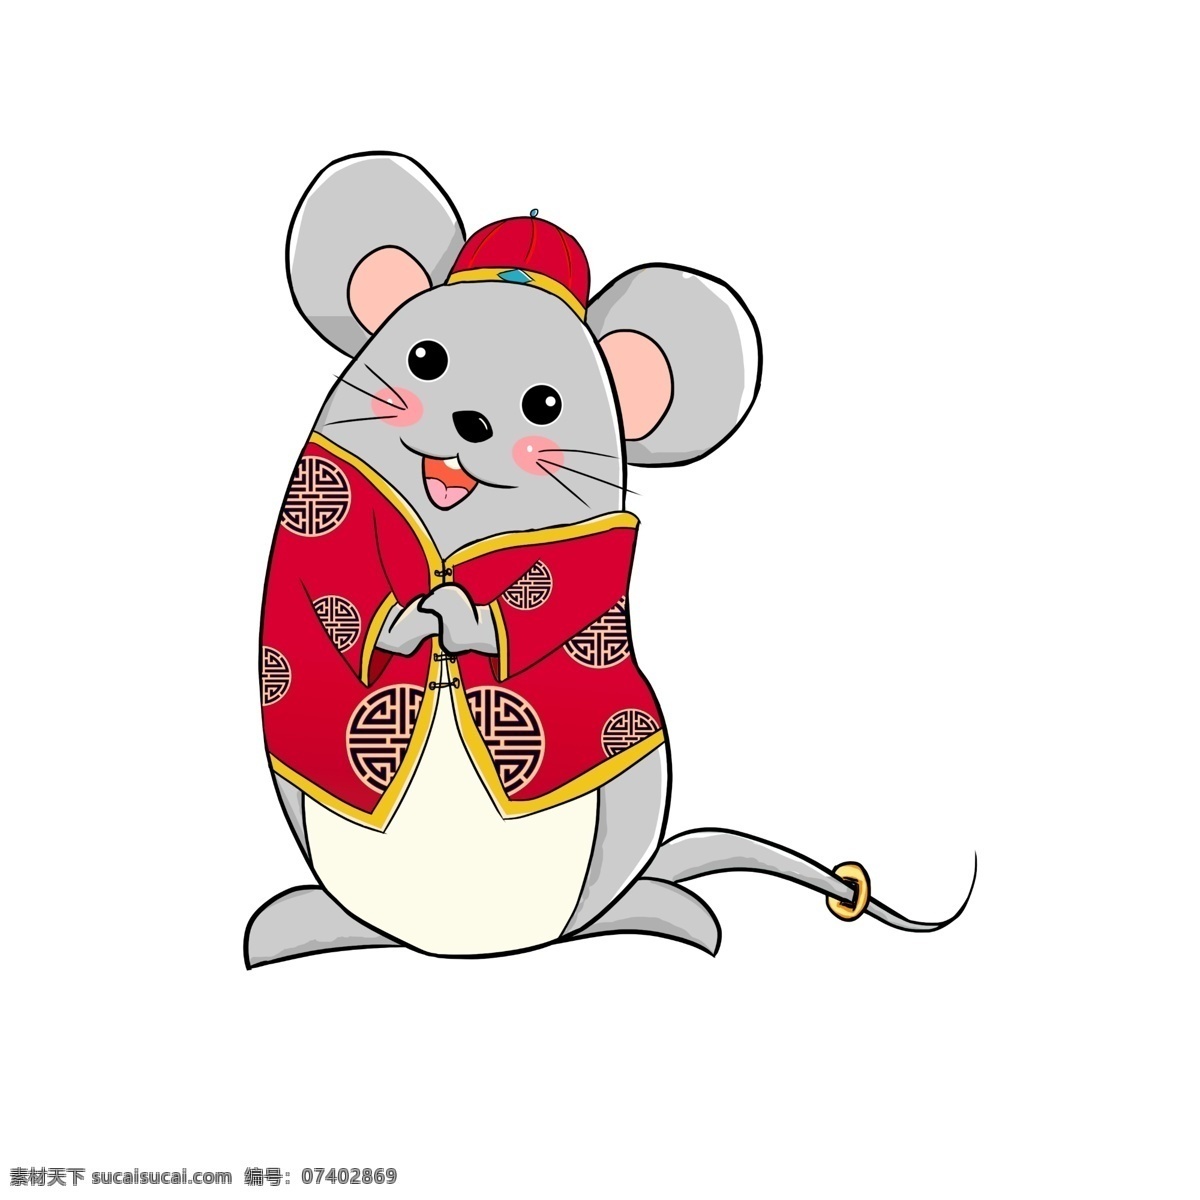 老鼠 贺年 手绘 插画 2020 鼠年插画 灰色老鼠 拜年 免扣 动漫动画 动漫人物